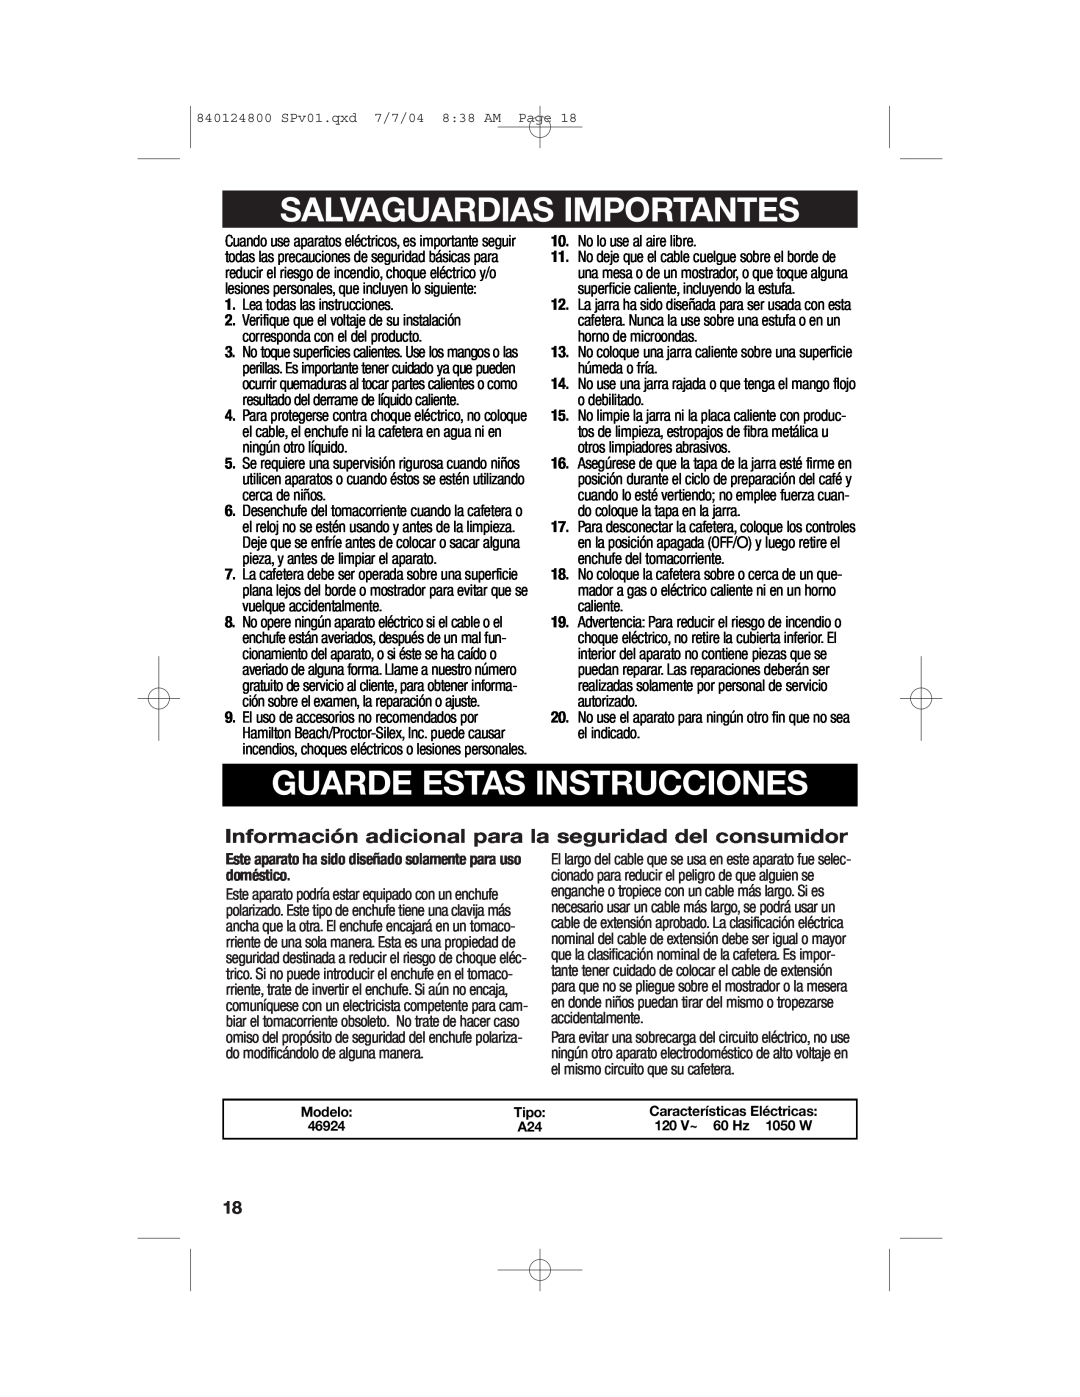 Hamilton Beach 46924 manual Salvaguardias Importantes, Guarde Estas Instrucciones, Modelo, Tipo, Características Eléctricas 